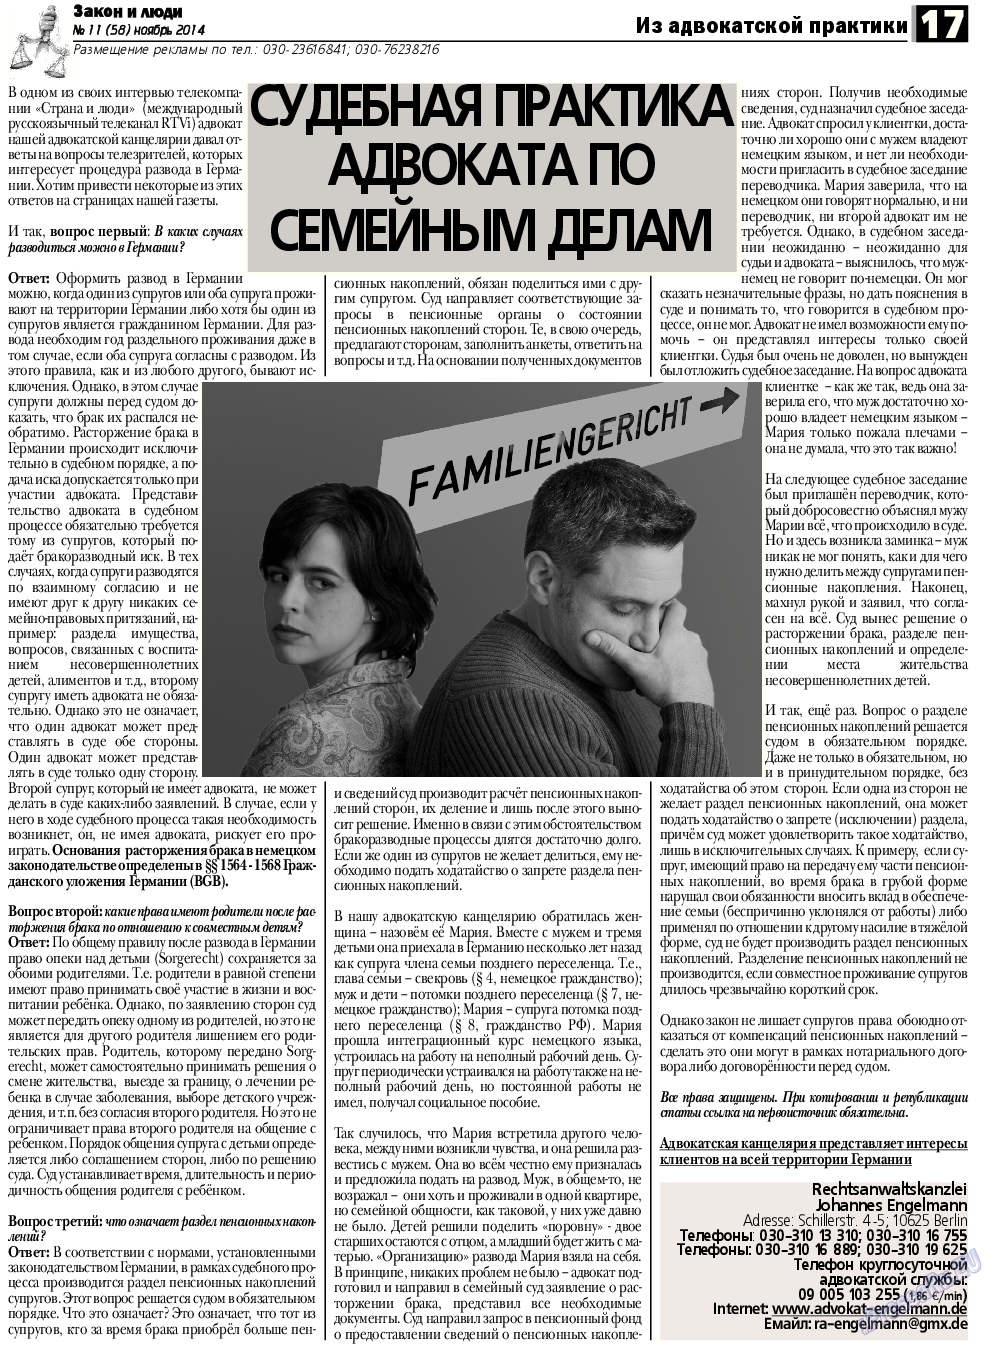 Закон и люди, газета. 2014 №11 стр.17